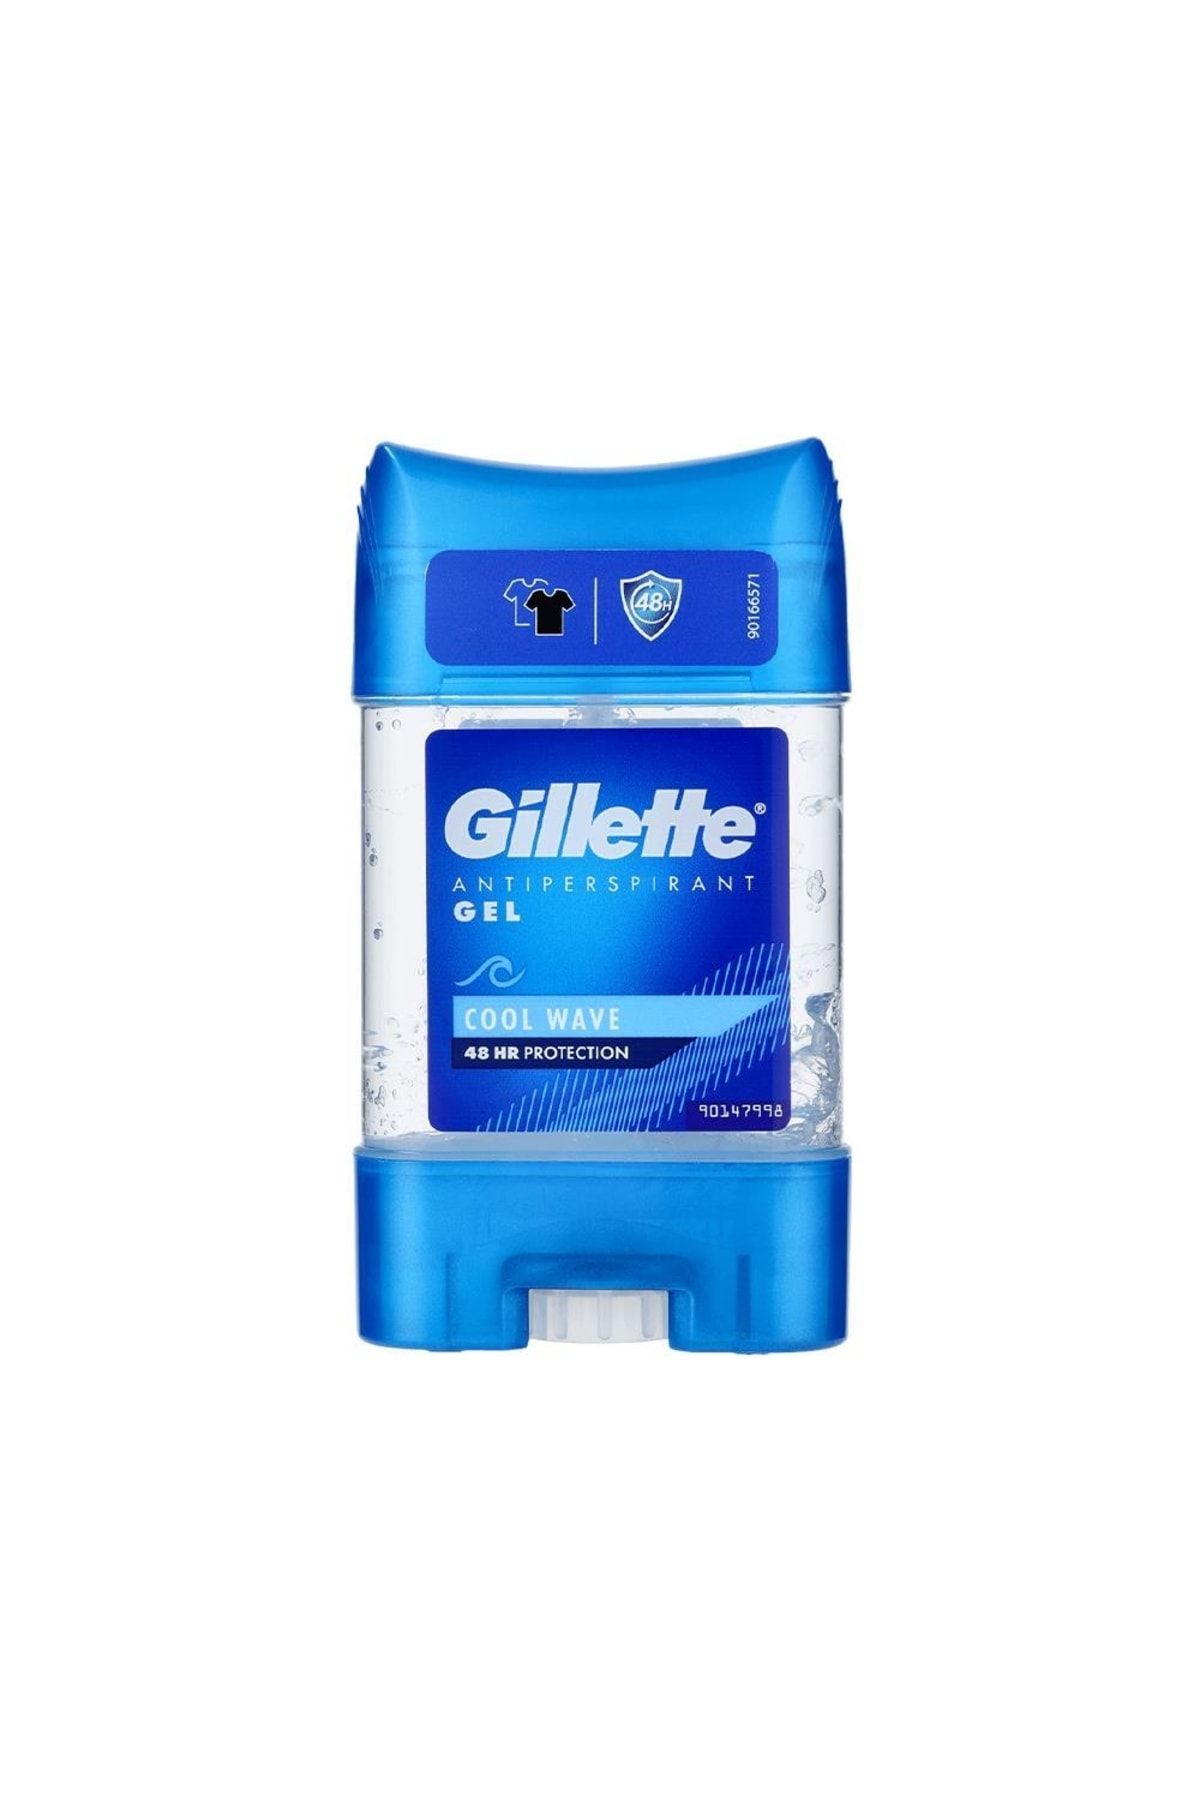 Gillette Antiperspirant Gel Cool Wave 70 Ml